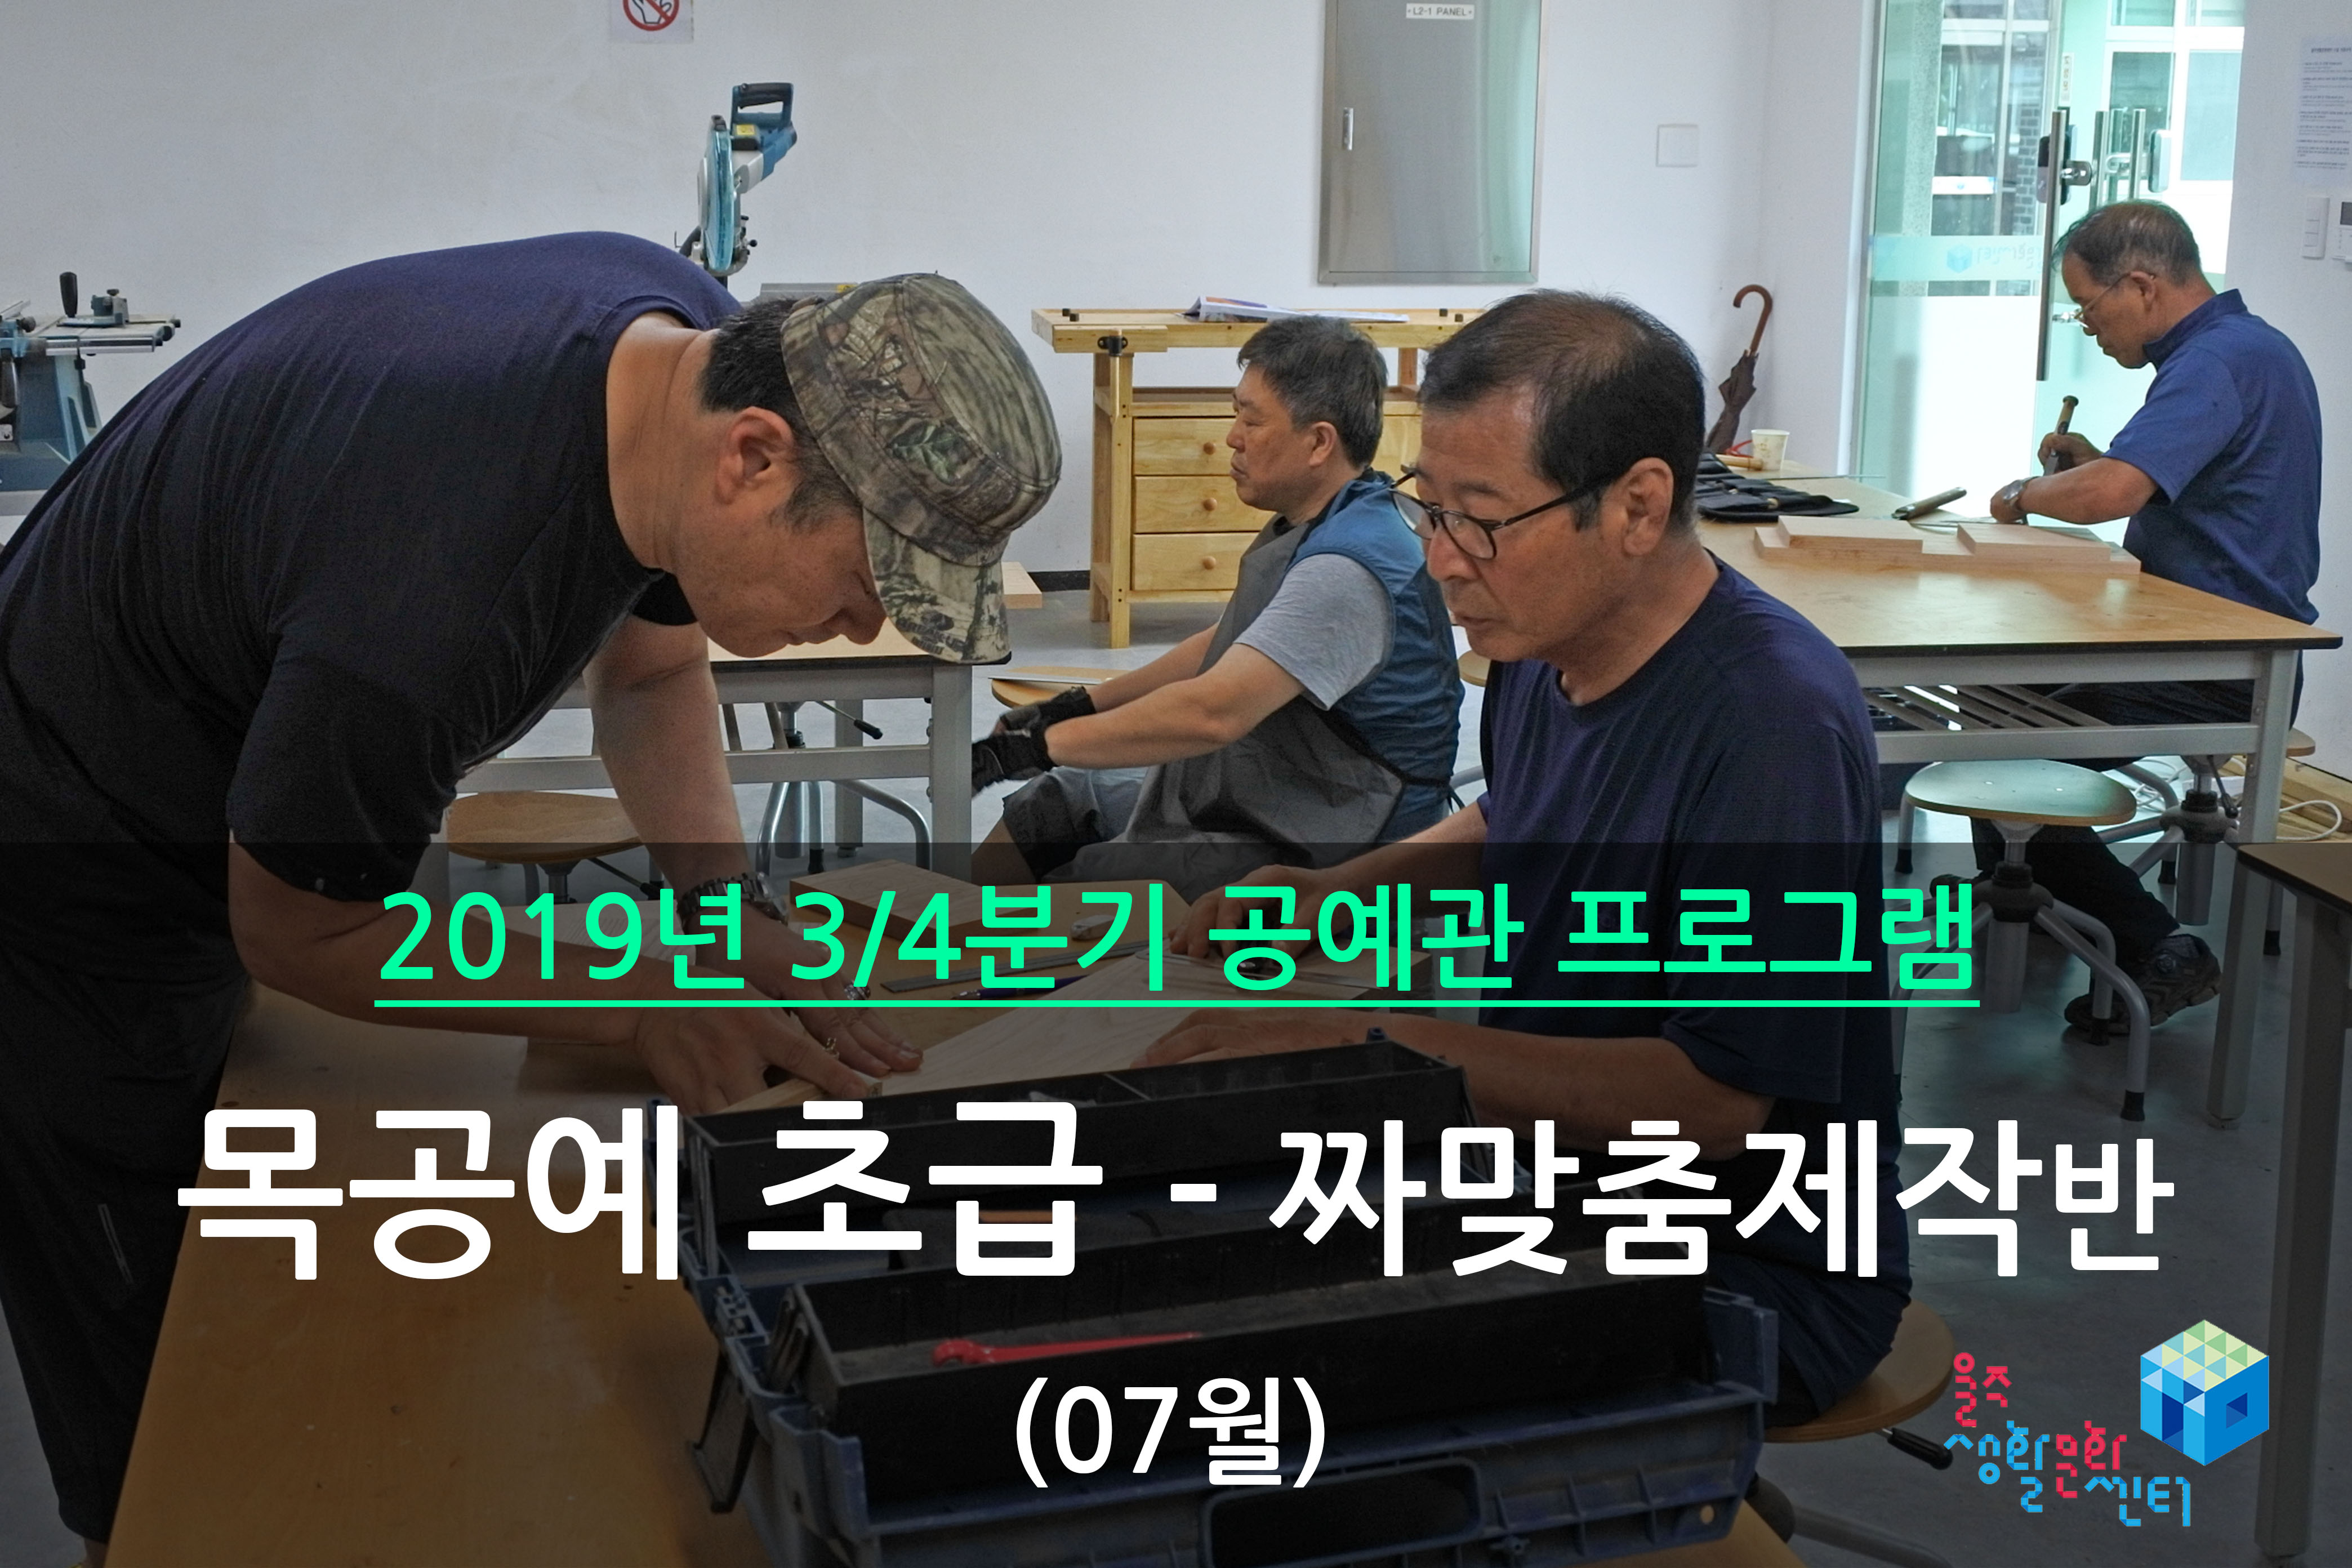 목공예 초급반 _ 2019년 3/4분기 수업 (2019년 07월)